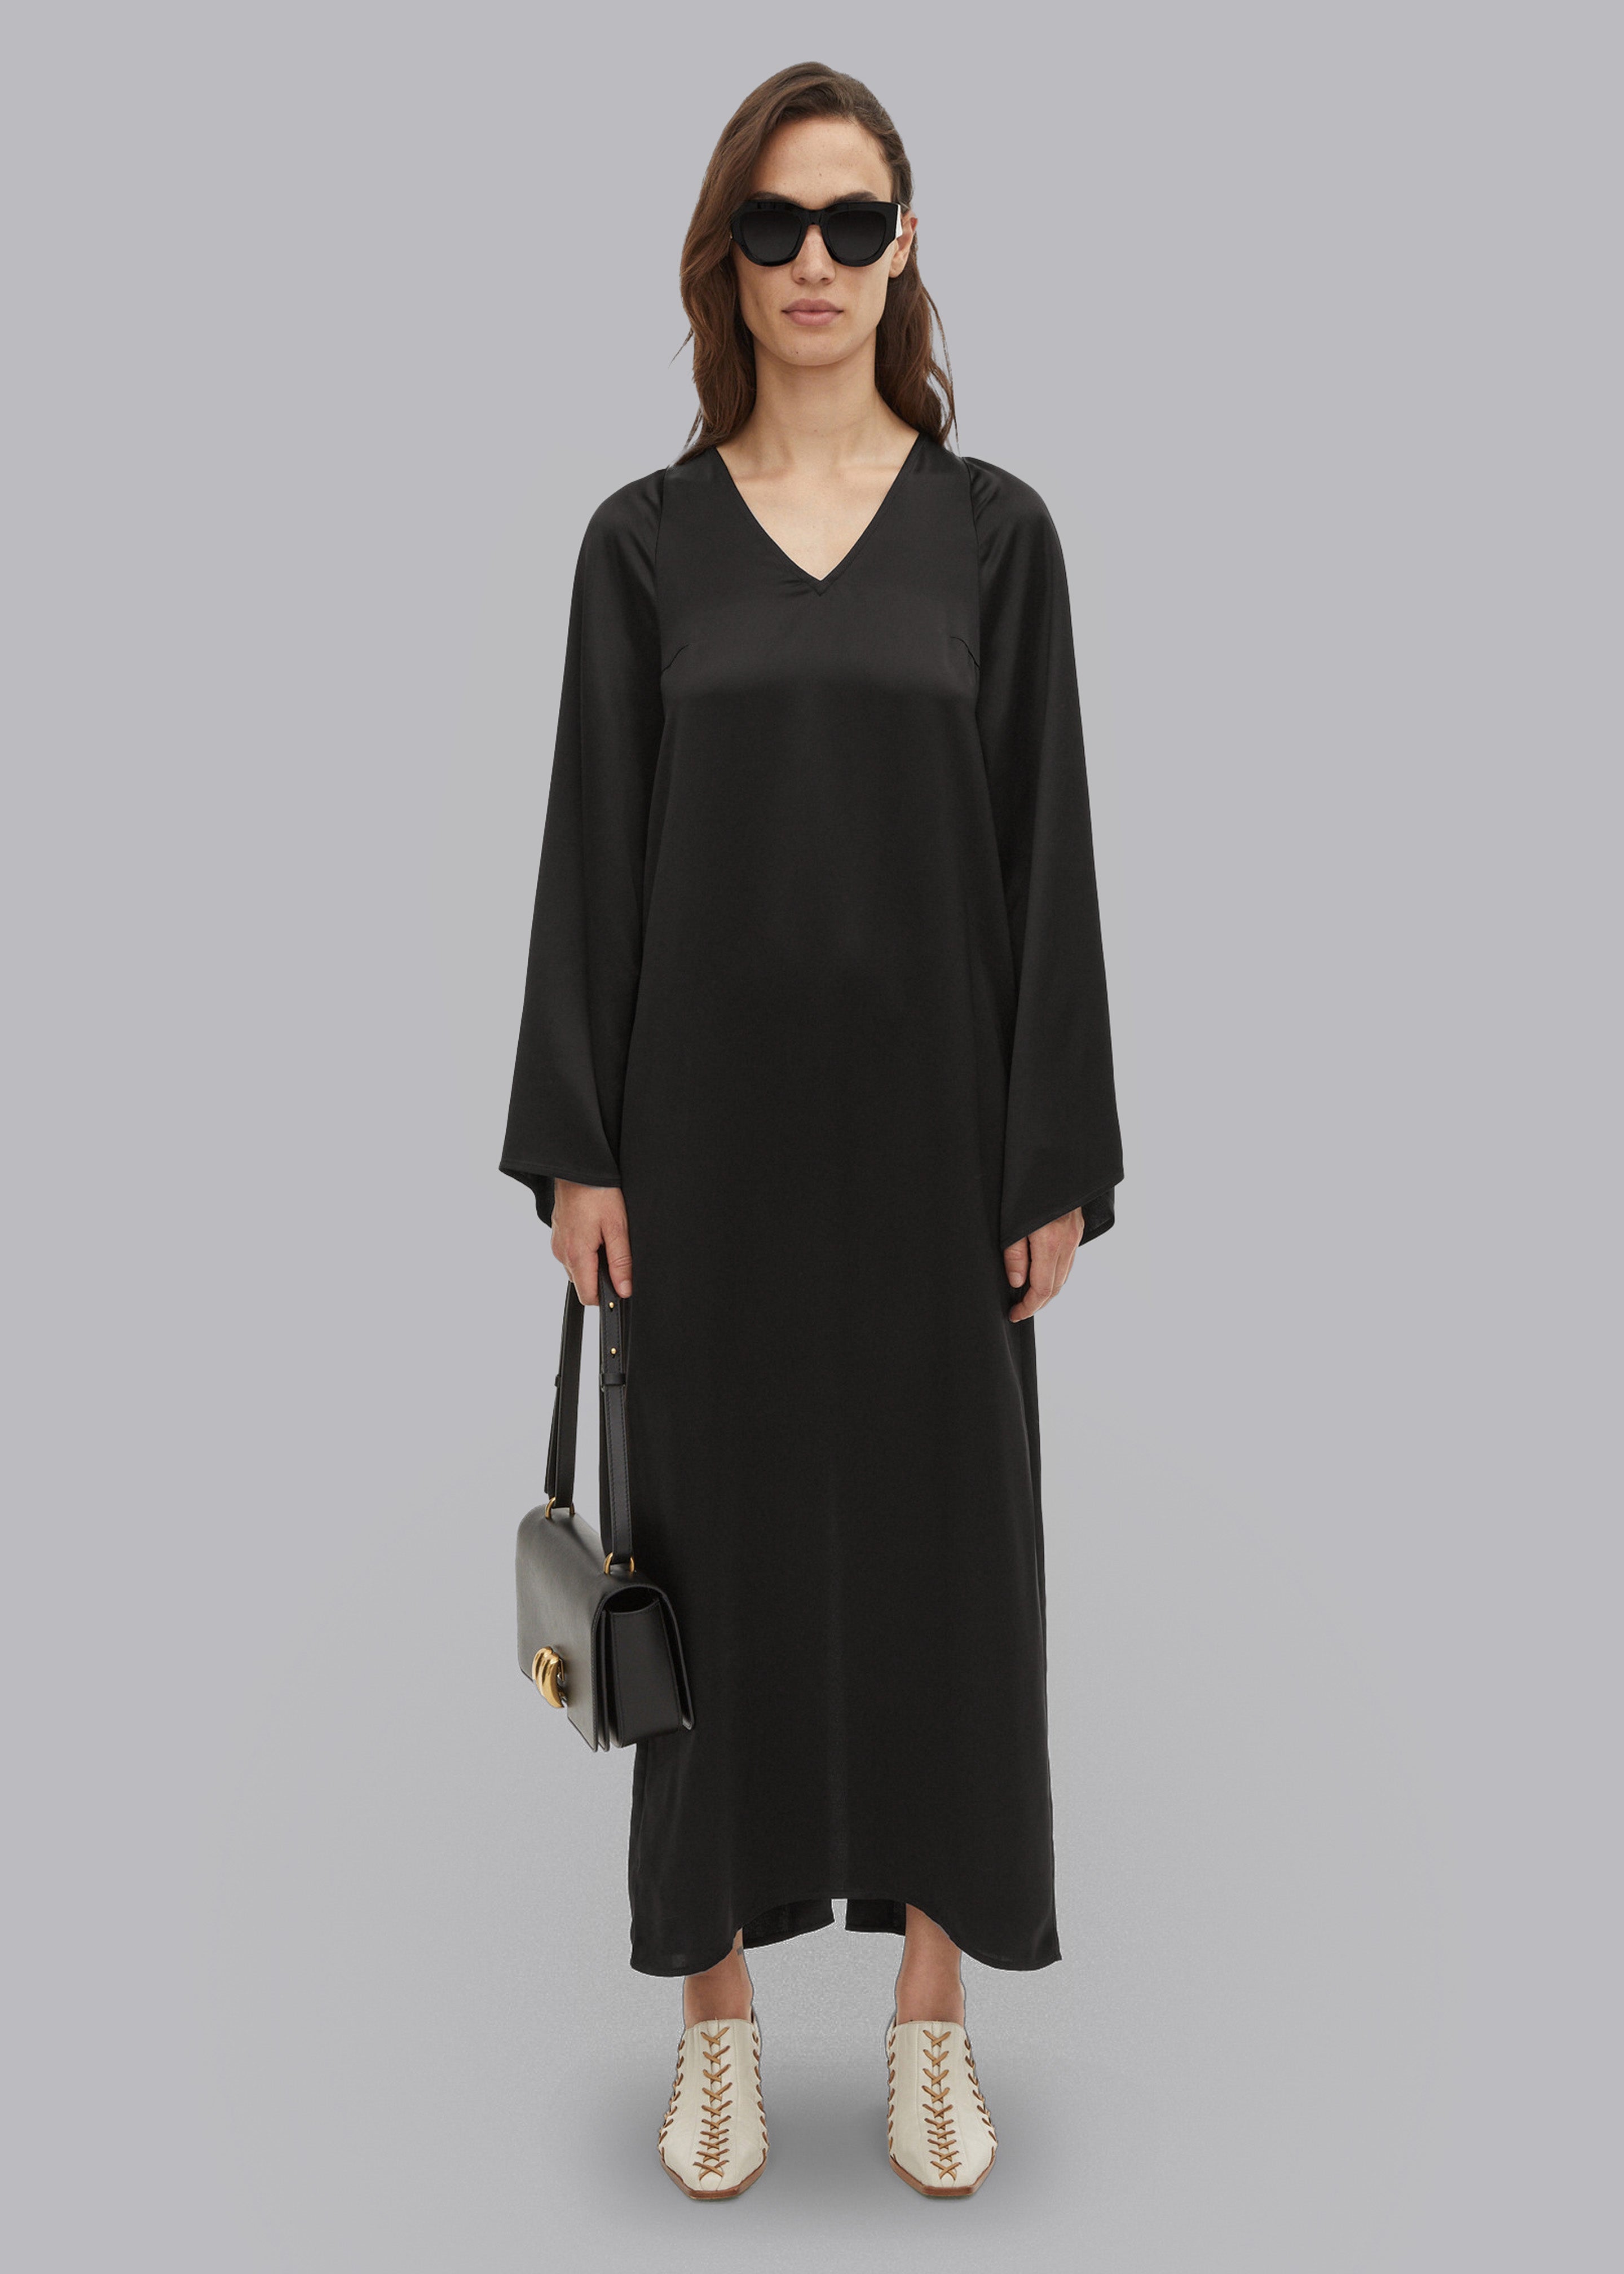 By Malene Birger Brynn Maxi Dress - Black – Frankie Shop Europe